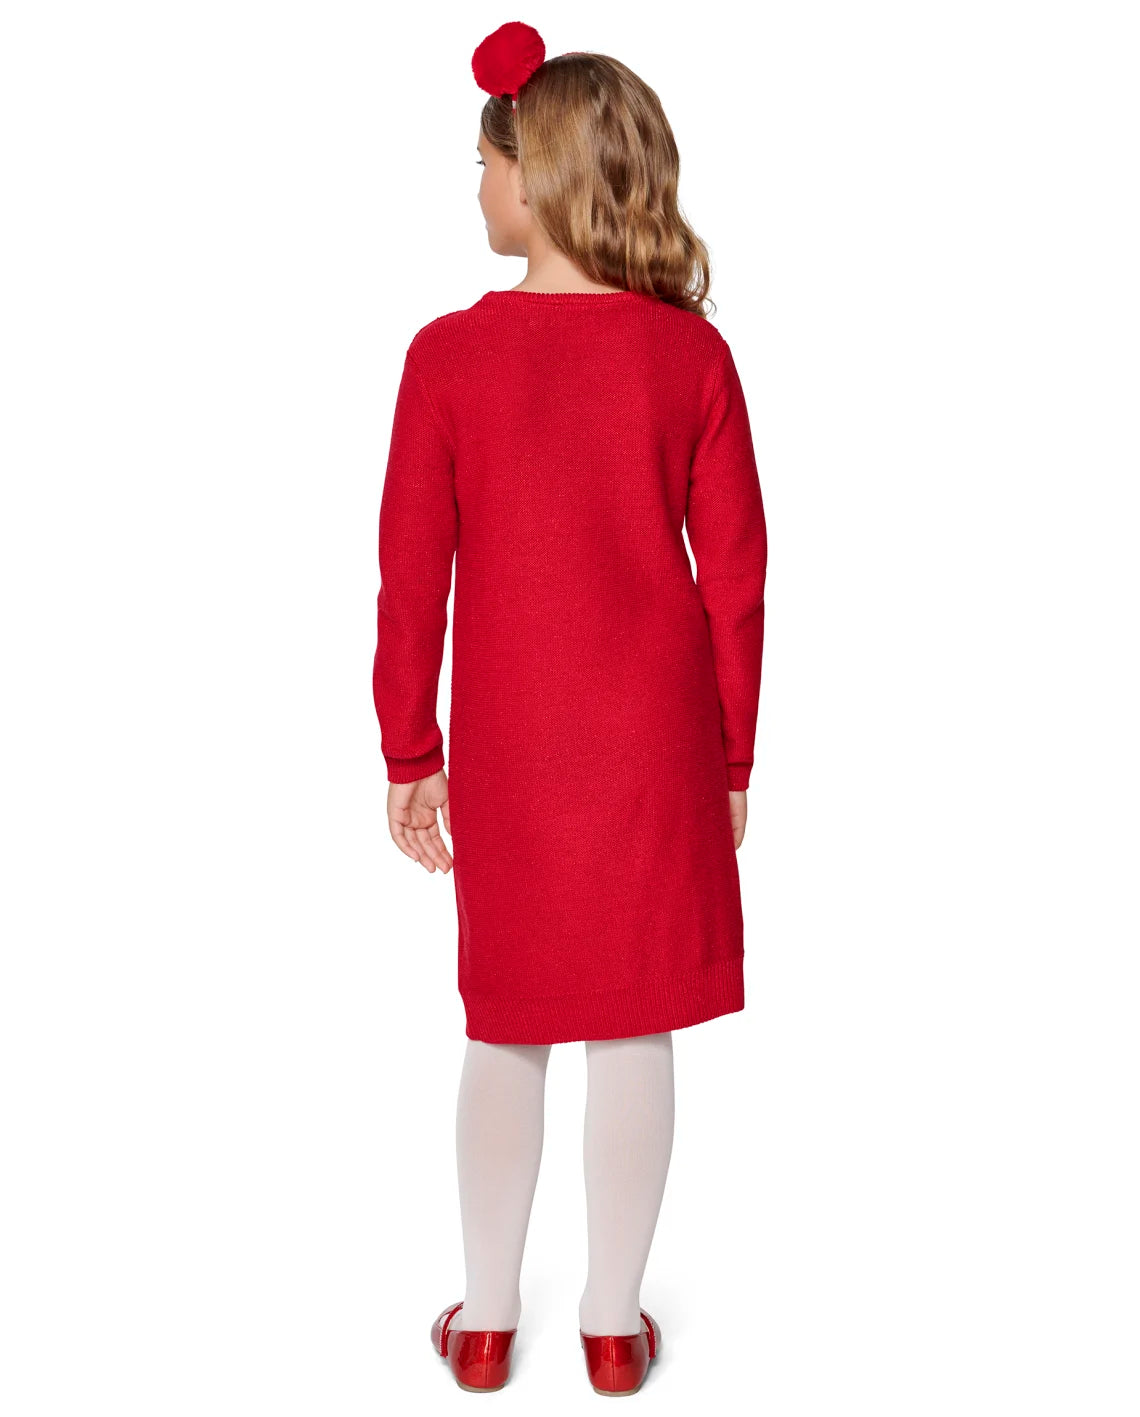 Vestido rojo niña Children's Place 18m a 16 años sueter – Kima Shop HN